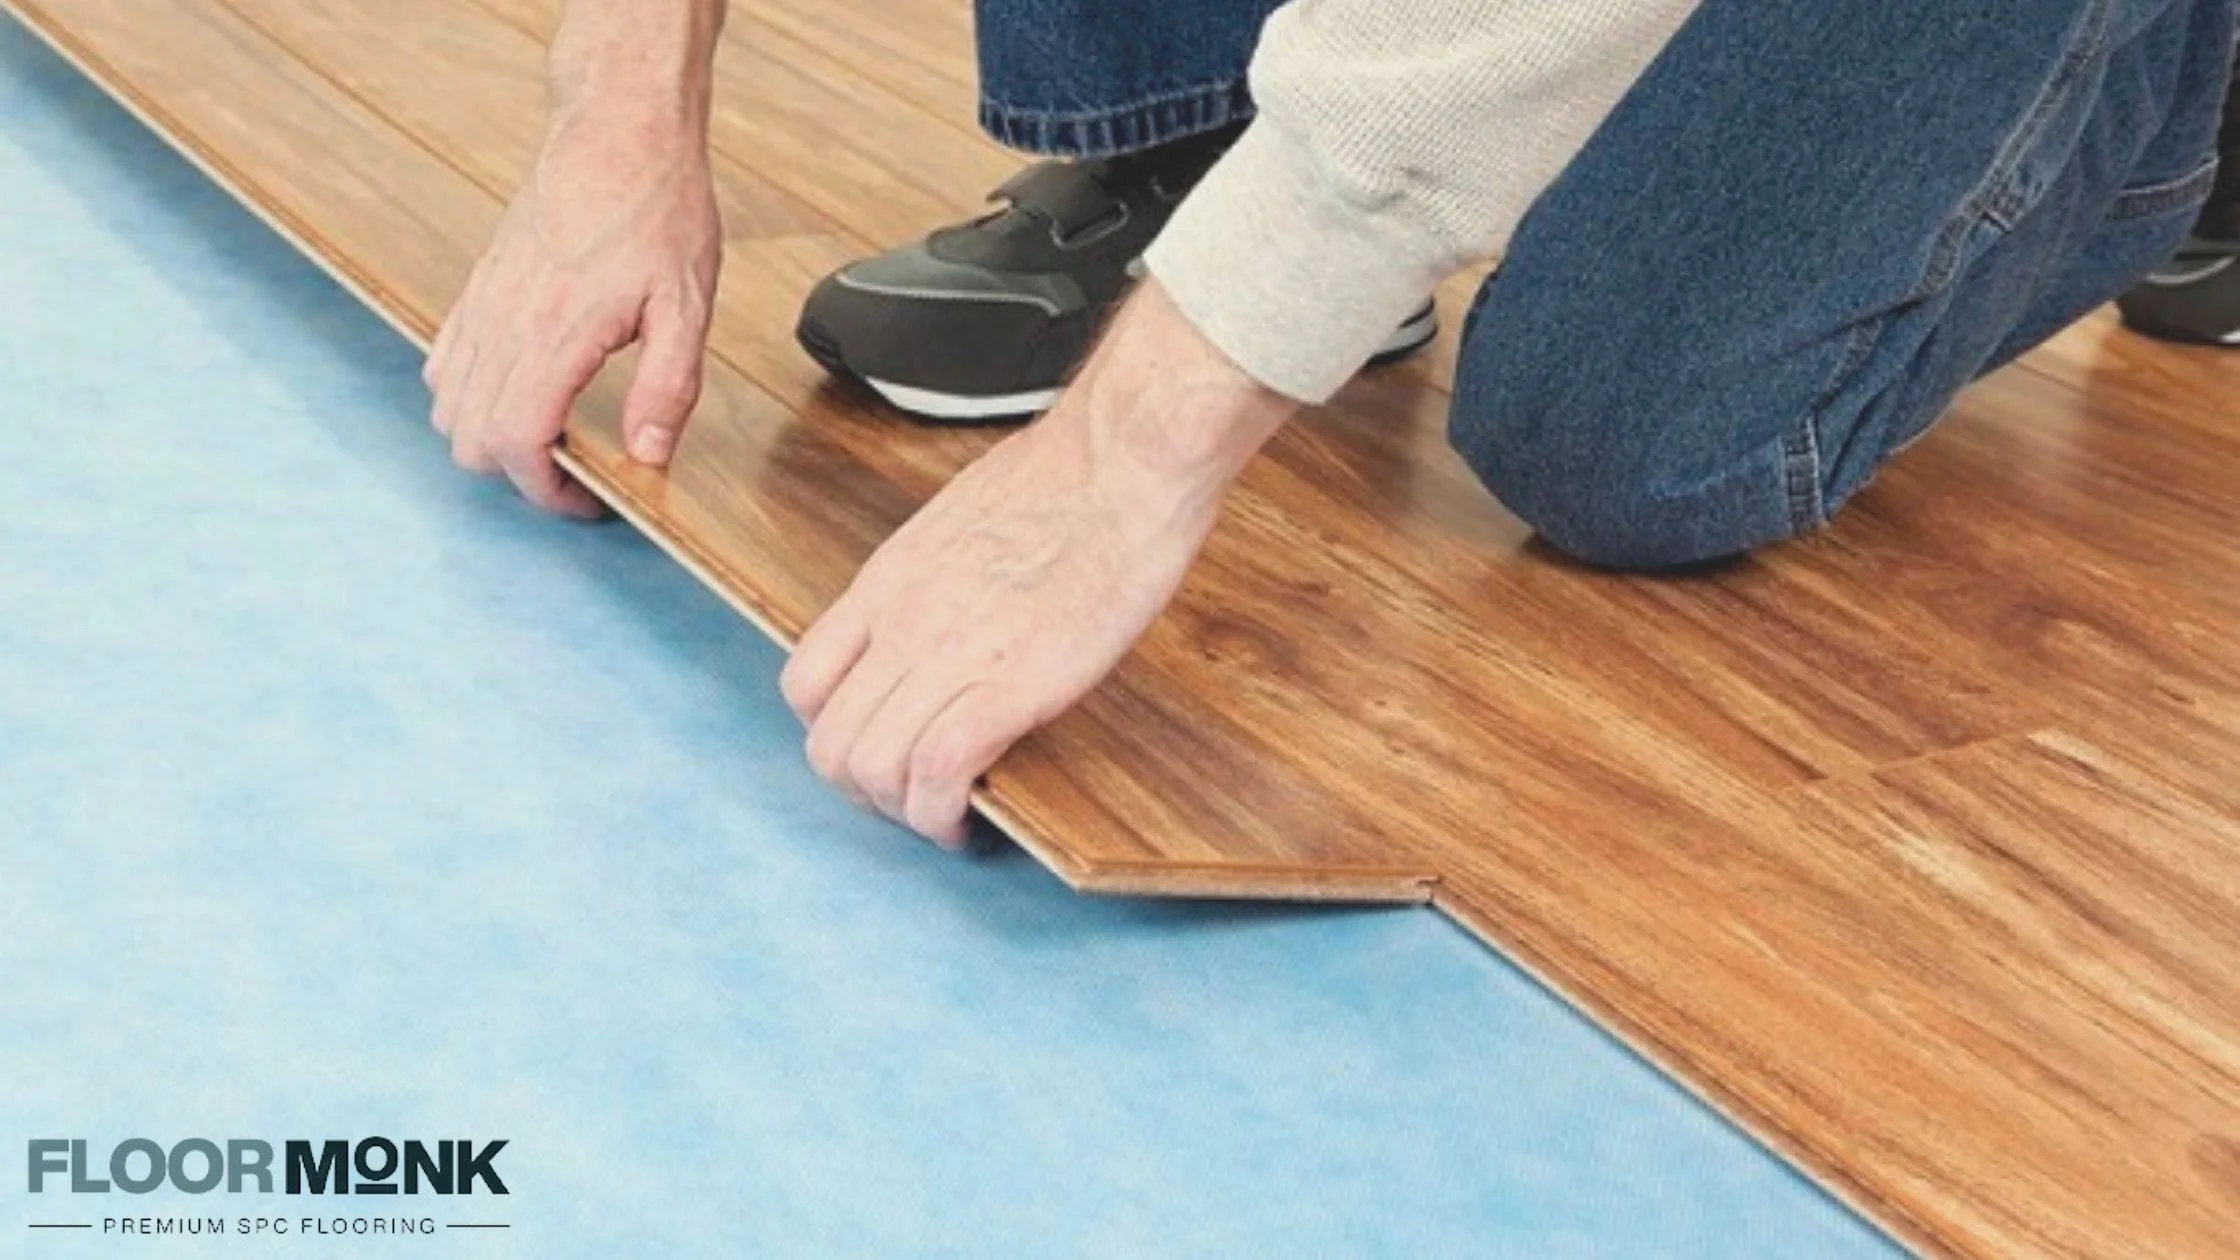 Waterproof Flooring is easy in Installation